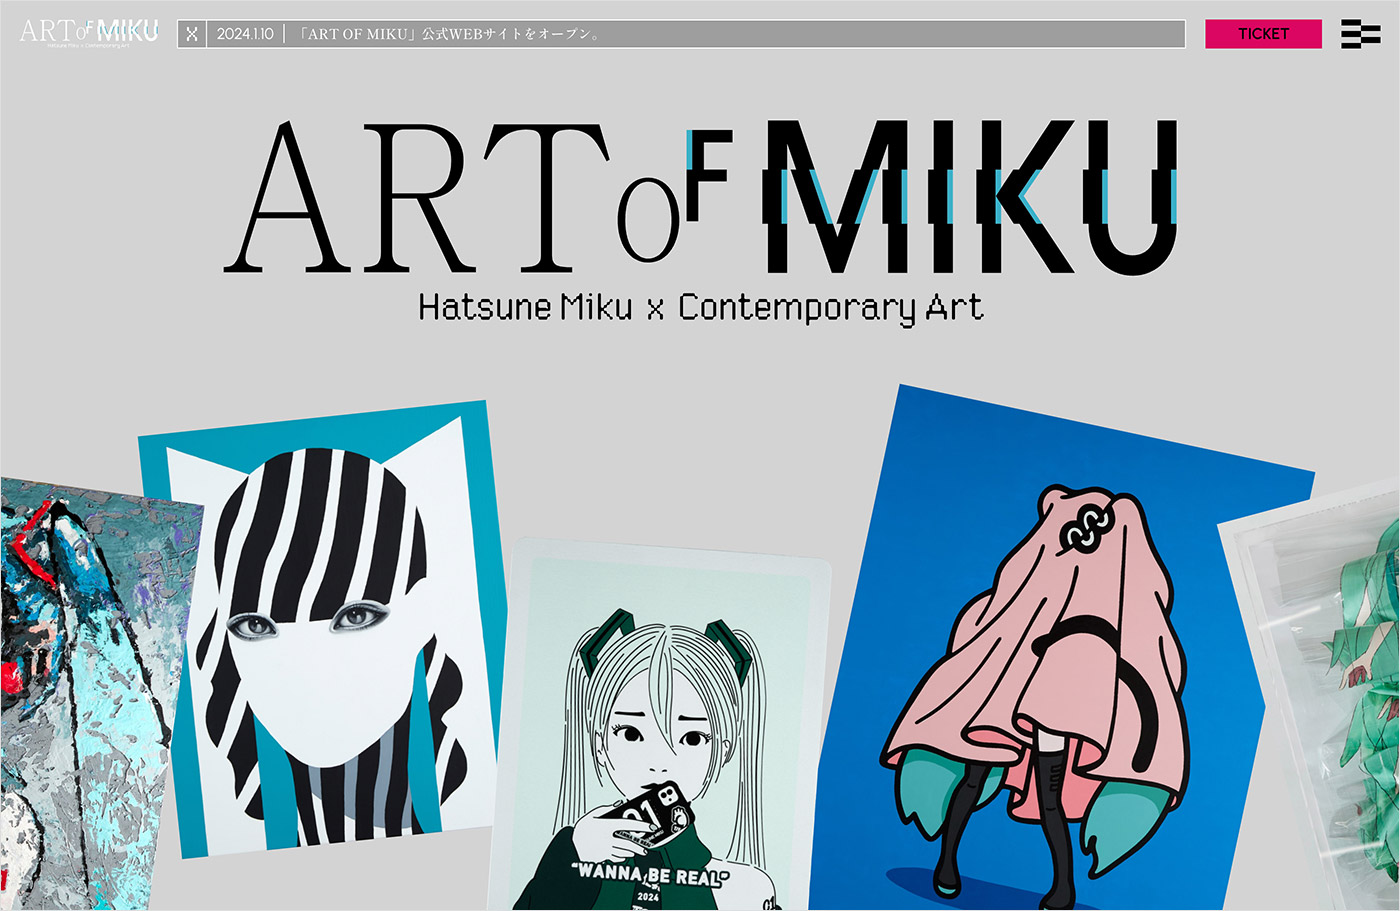 ART OF MIKUウェブサイトの画面キャプチャ画像